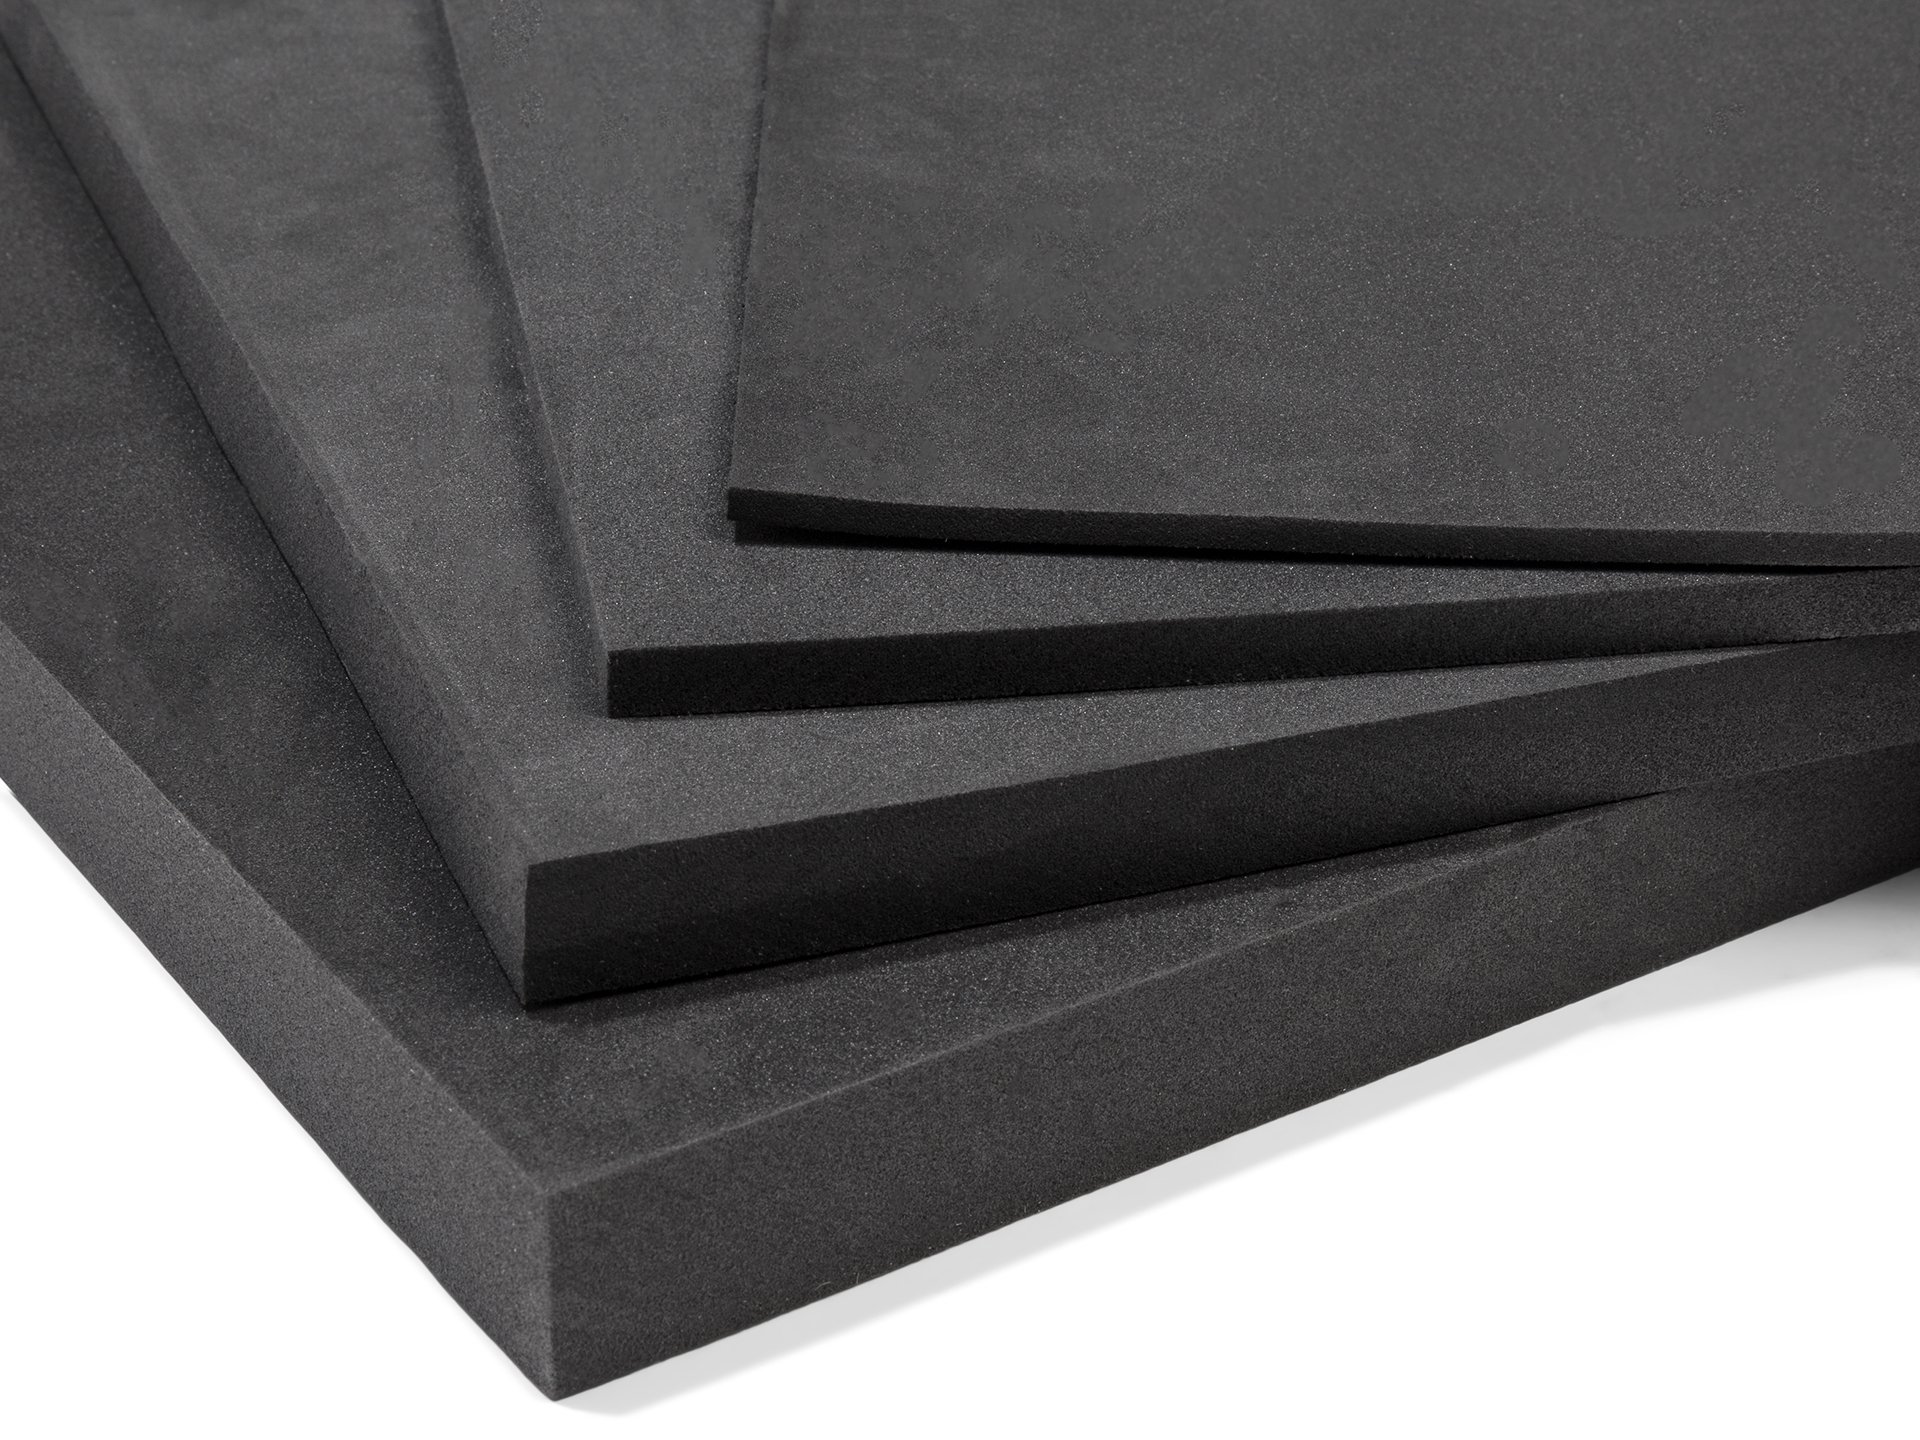 Schaumstoff einseitig kaschiert schwarz 5 mm 150 cm breit | Polsterstoffe &  Möbelstoffe - Ihr Fachhandel für Polstermaterial